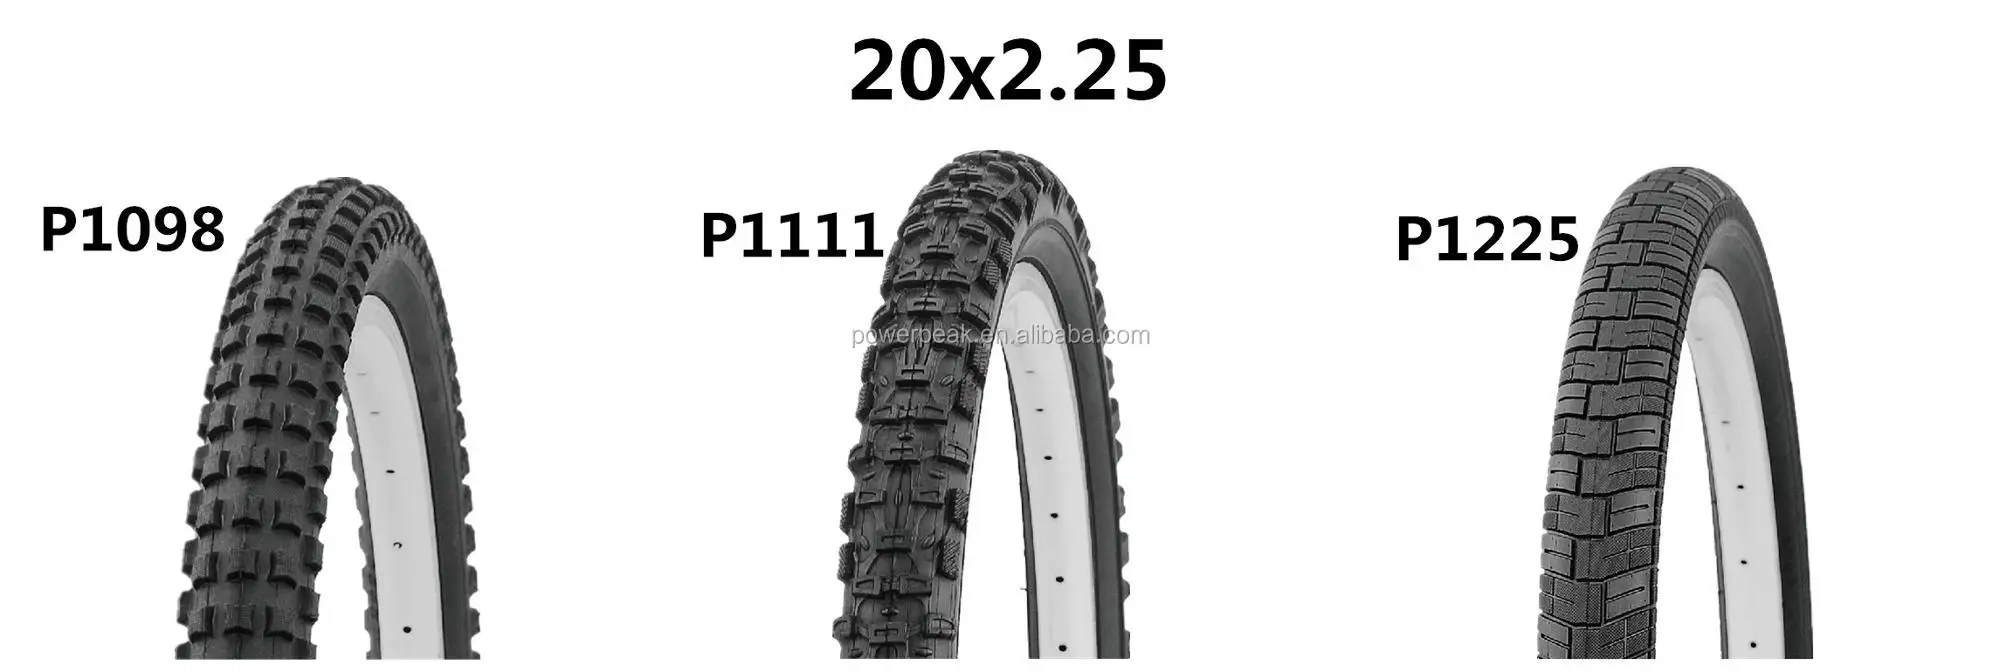 20x2 25 tire